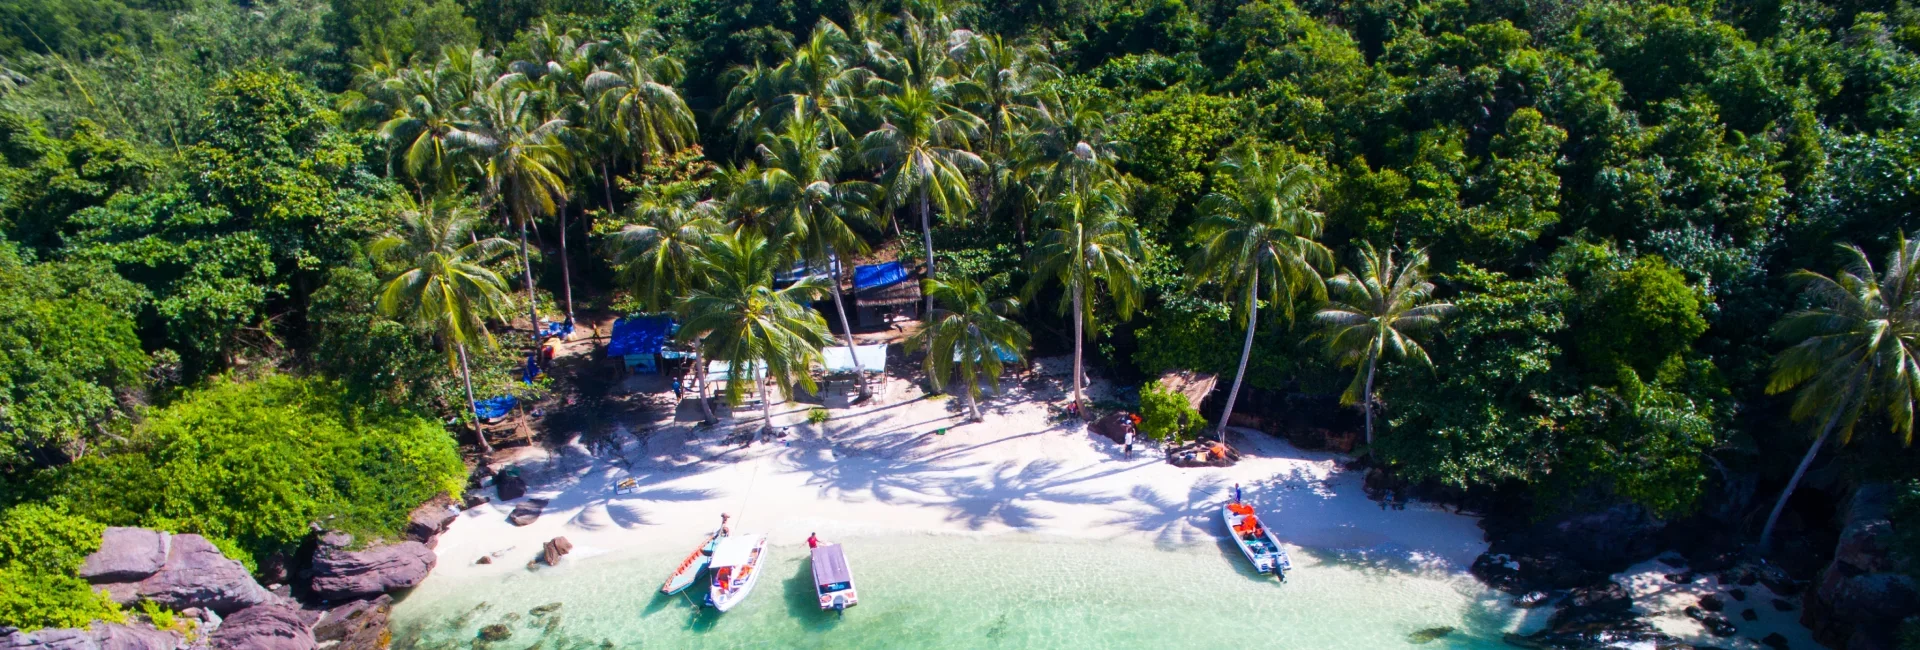 Incontournables et séjour balnéaire à l’ile de Phu Quoc